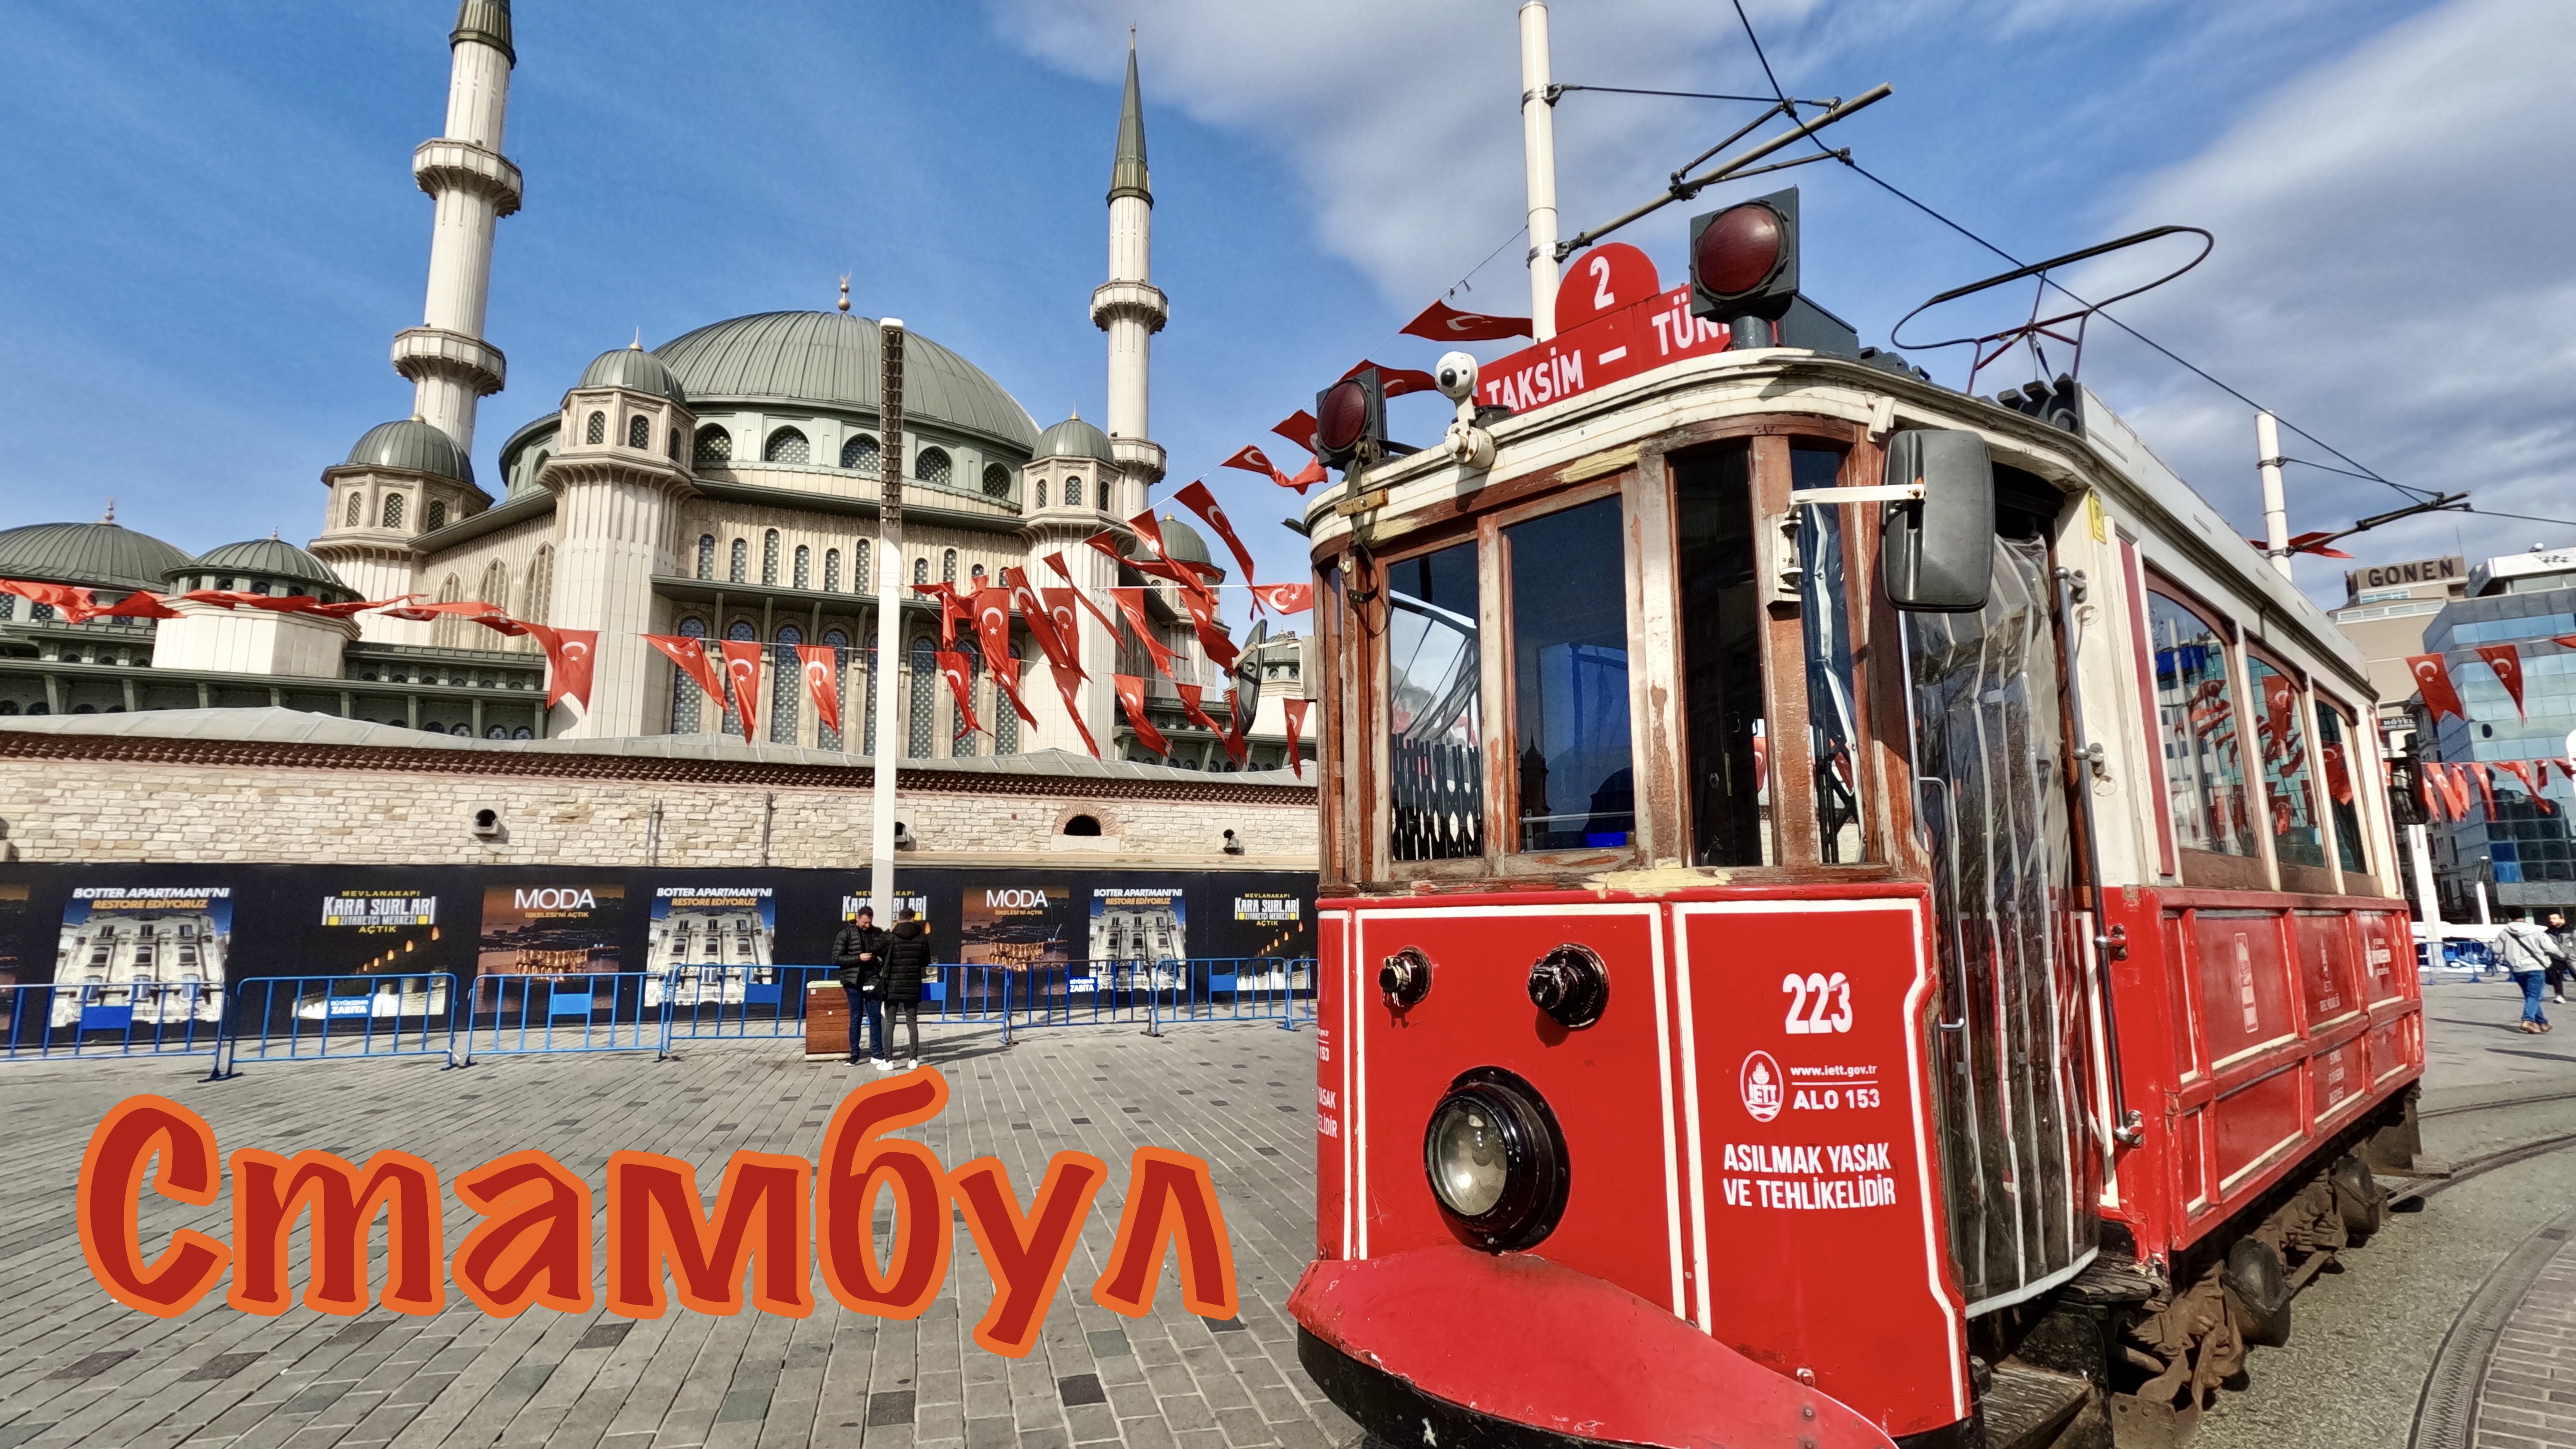 Турция, день 1. Стамбул, гуляю по городу, учусь ориентироваться, впервые за границей